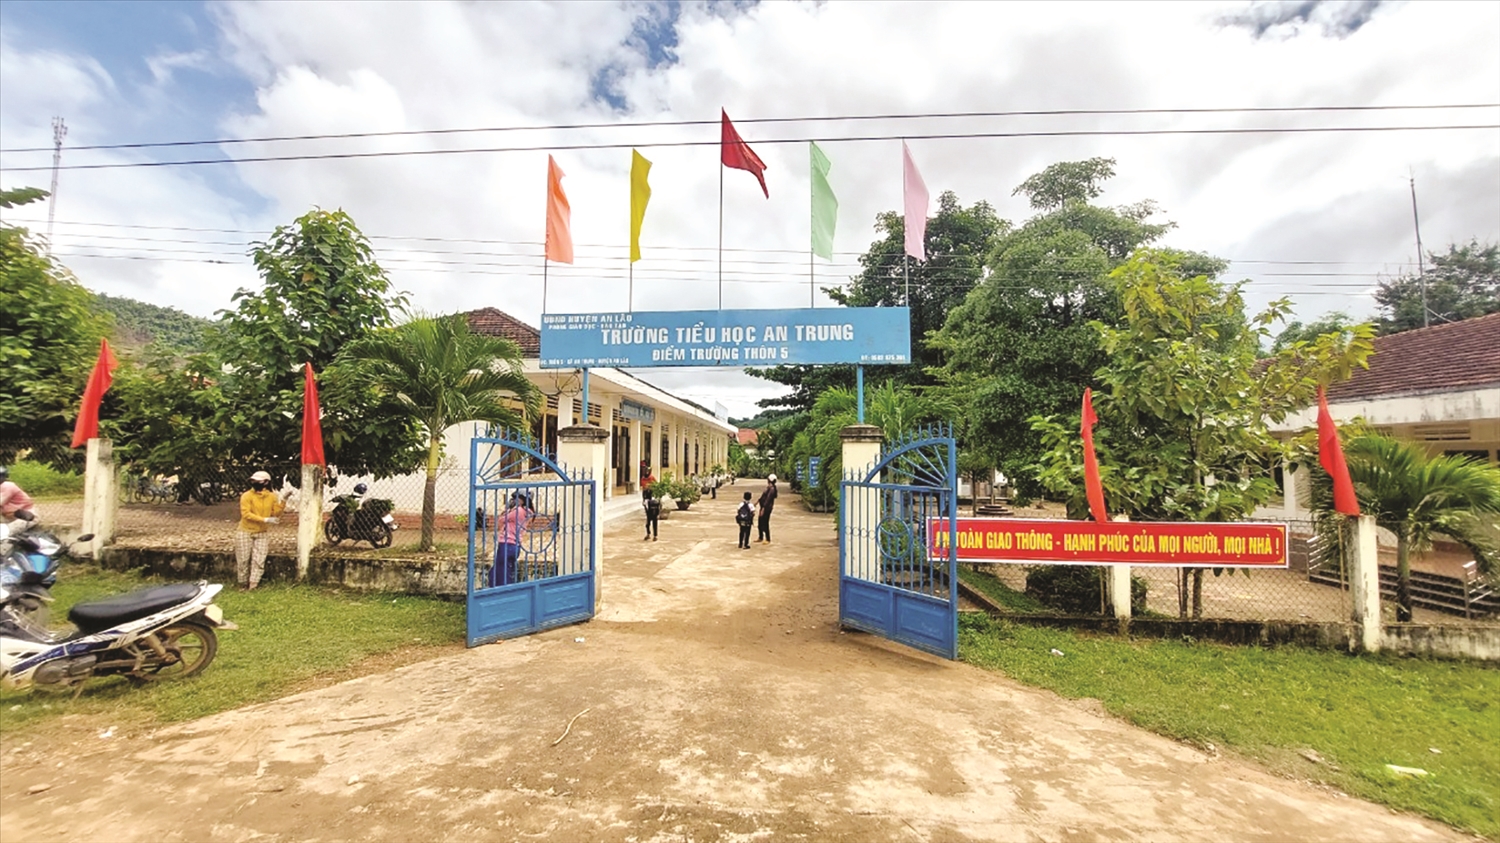 Hệ thống trường học ở các huyện miền núi Bình Định ngày càng được xây dựng bài bản